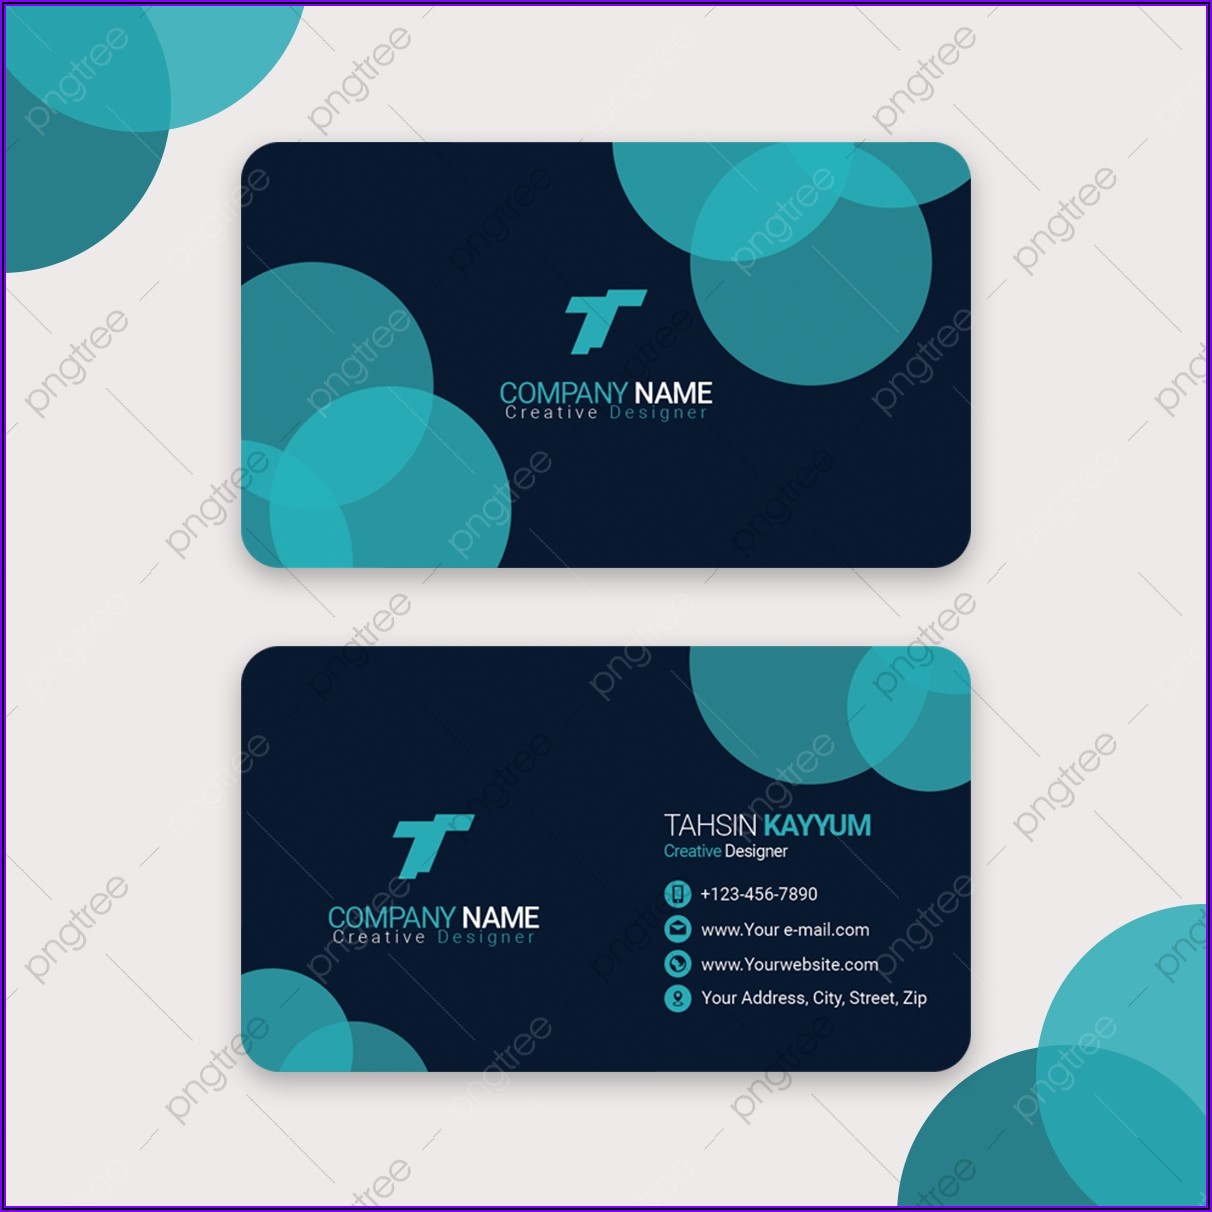 Modern Stylish Business Card Design